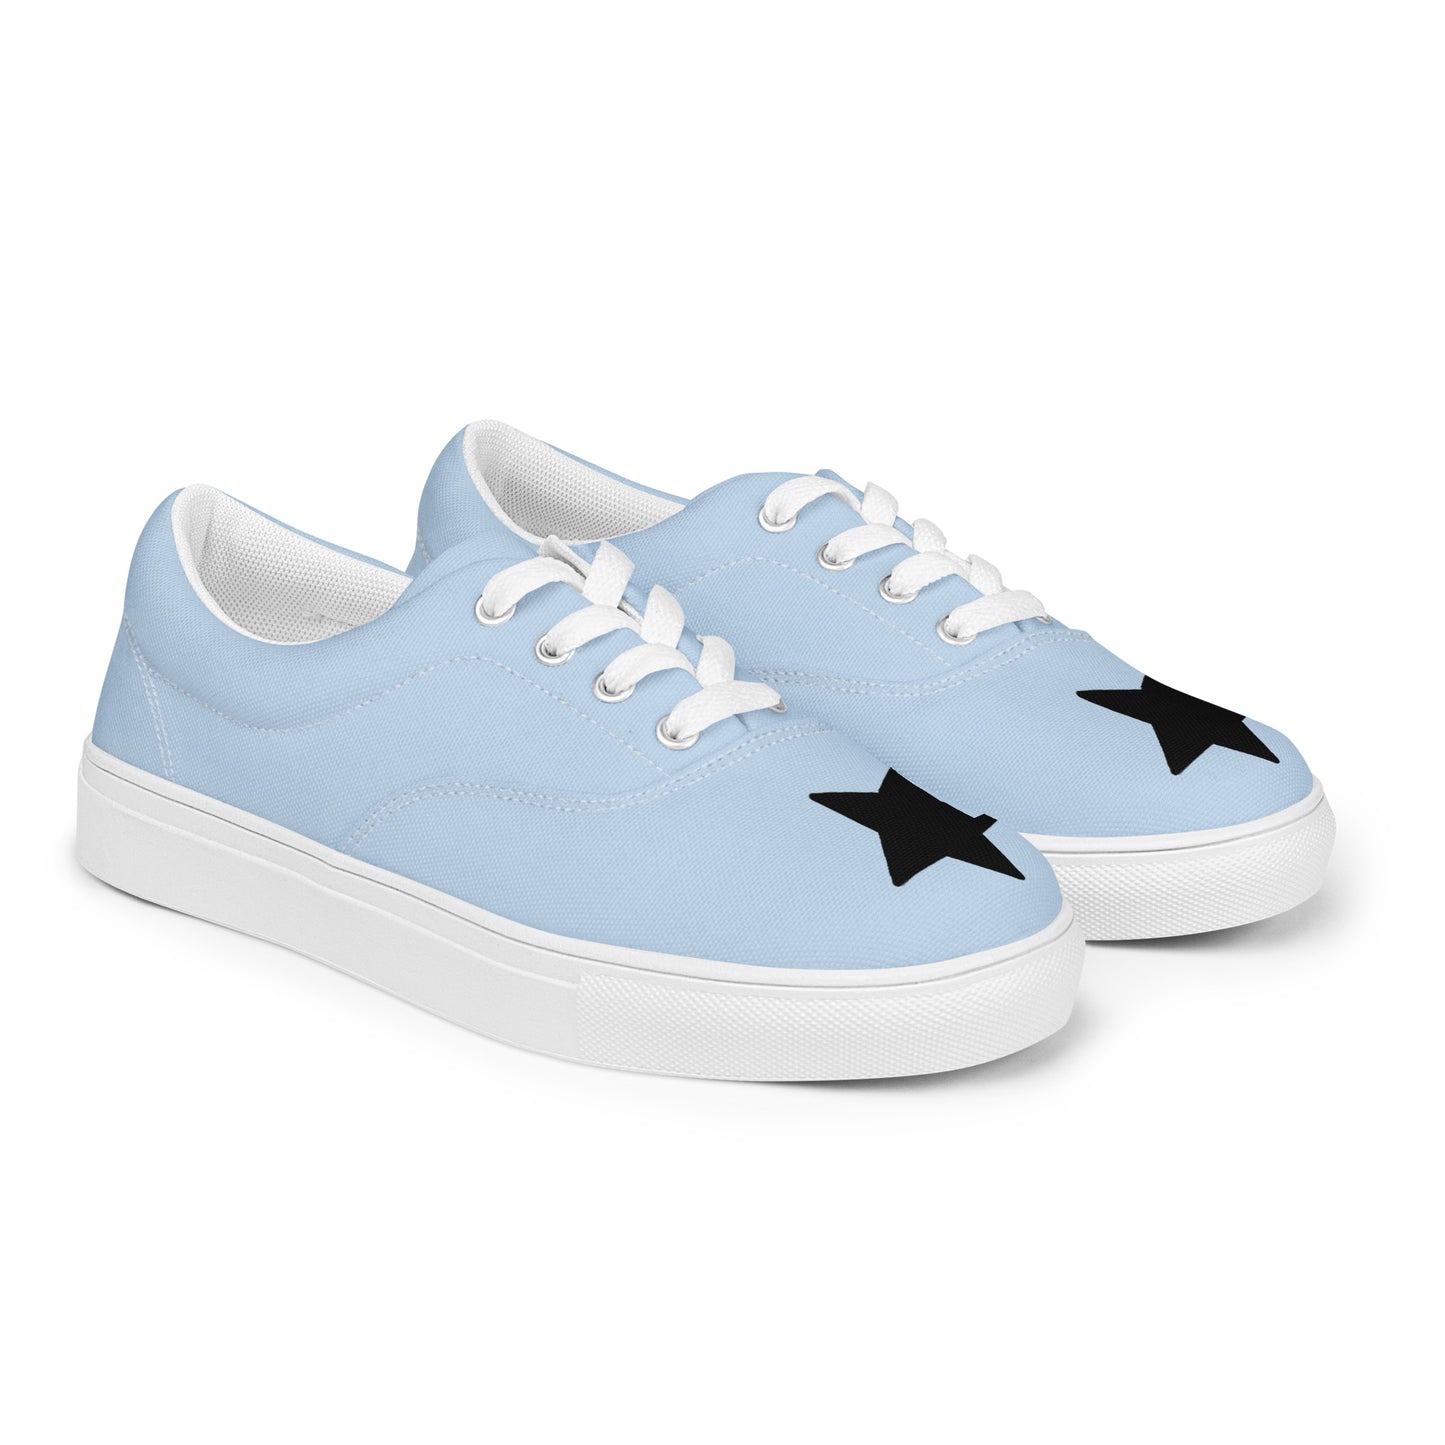 Women’s Black Star Pattens Blue Lace-up Canvas Shoes